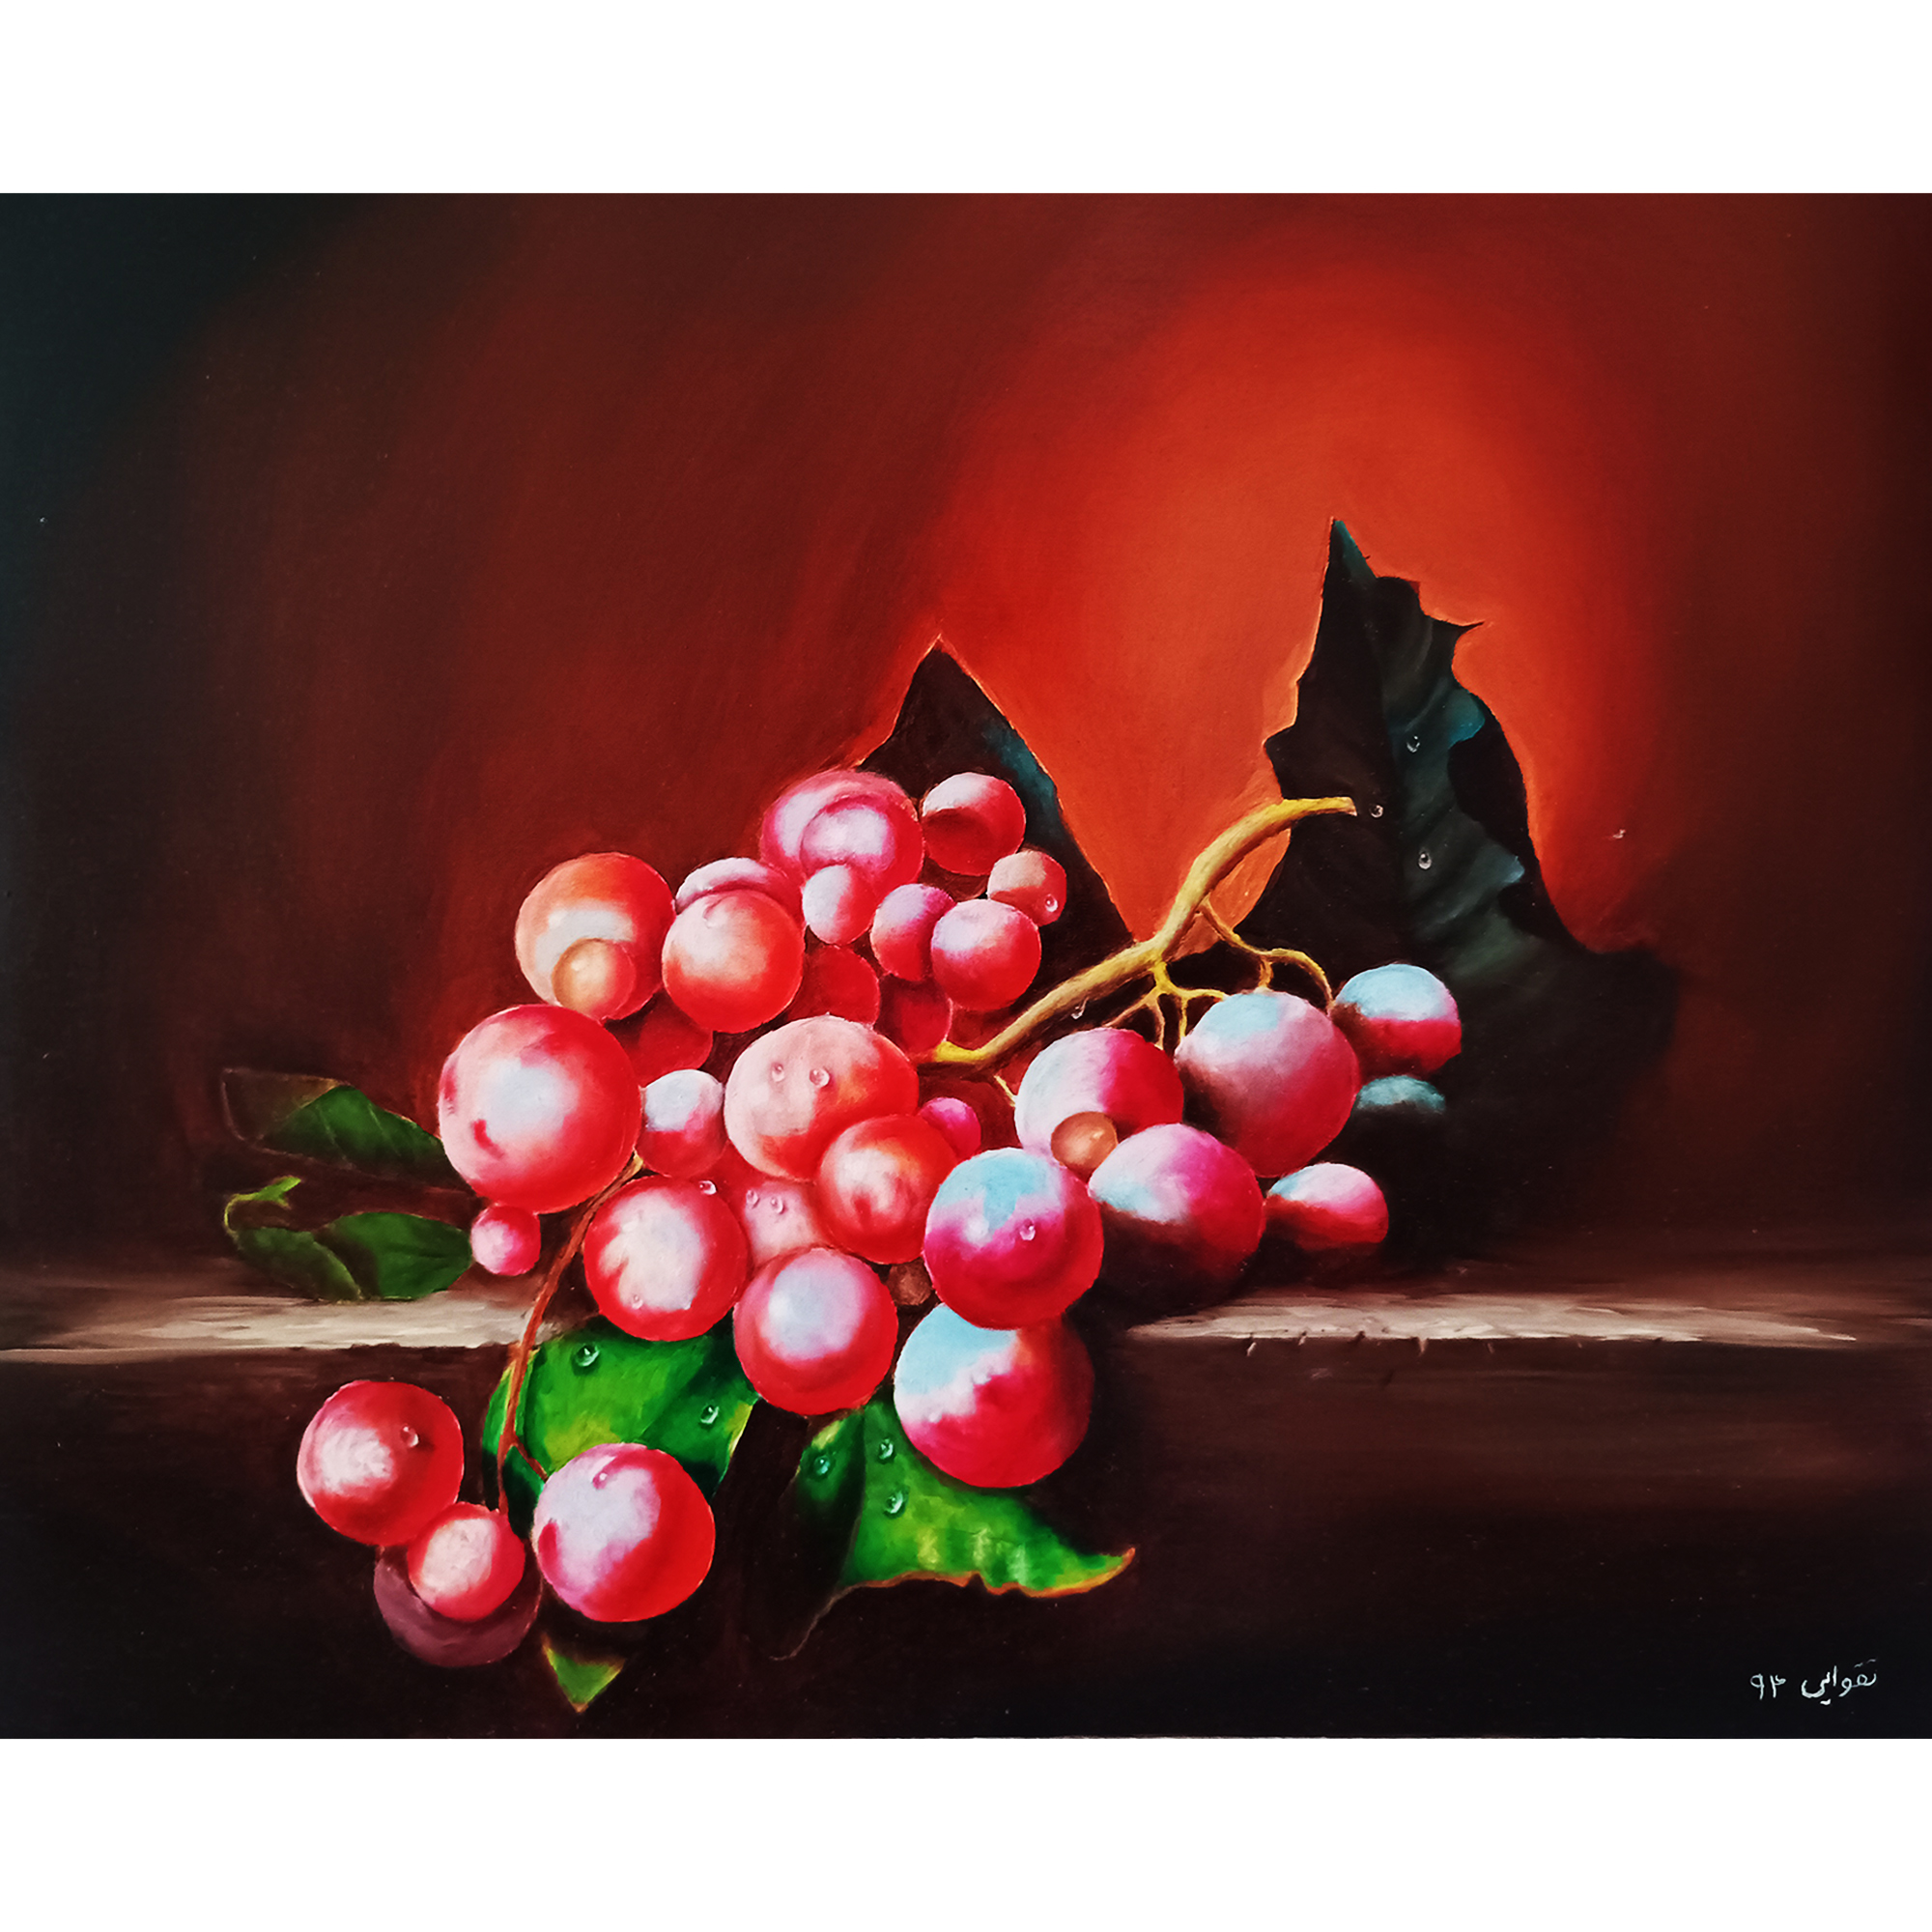 نکته خرید - قیمت روز تابلو نقاشی رنگ روغن طرح میوه انگور مدل طبیعت بیجان 3 خرید